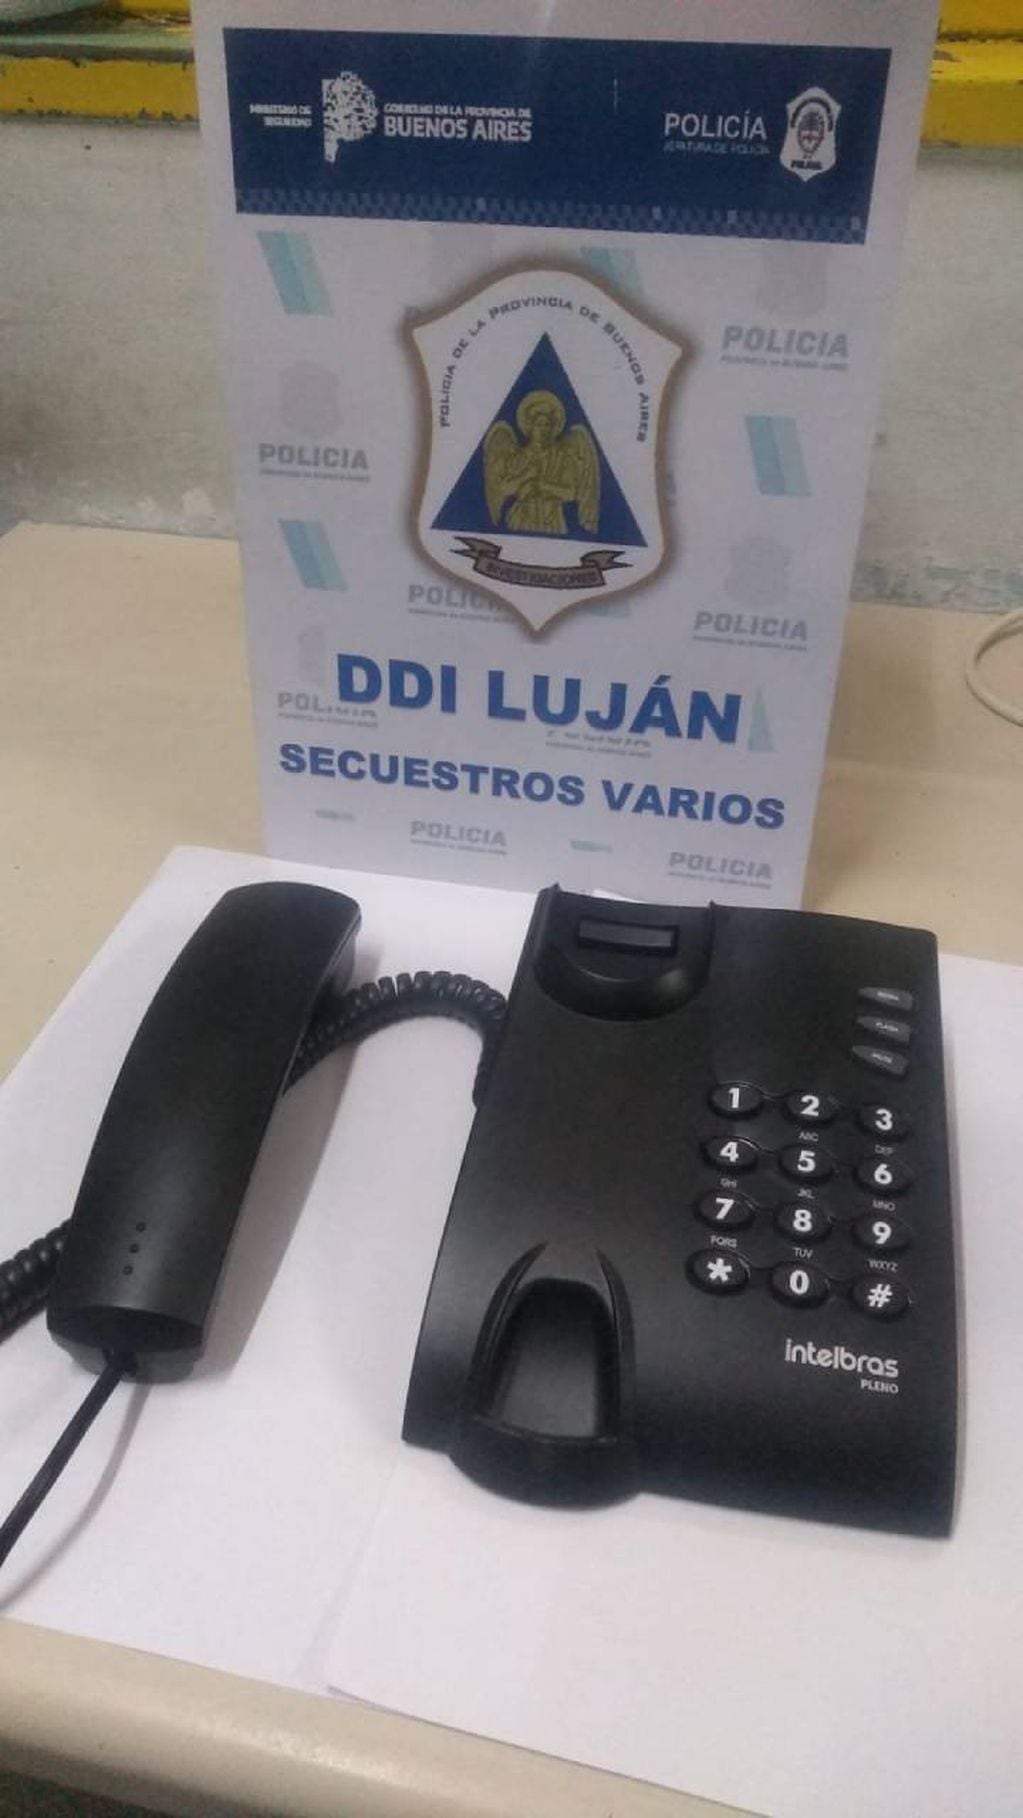 La Policía de Buenos Aires secuestró un teléfono fijo en la celda de Ariel Máximo "Guille" Cantero en la cárcel de Marcos Paz.